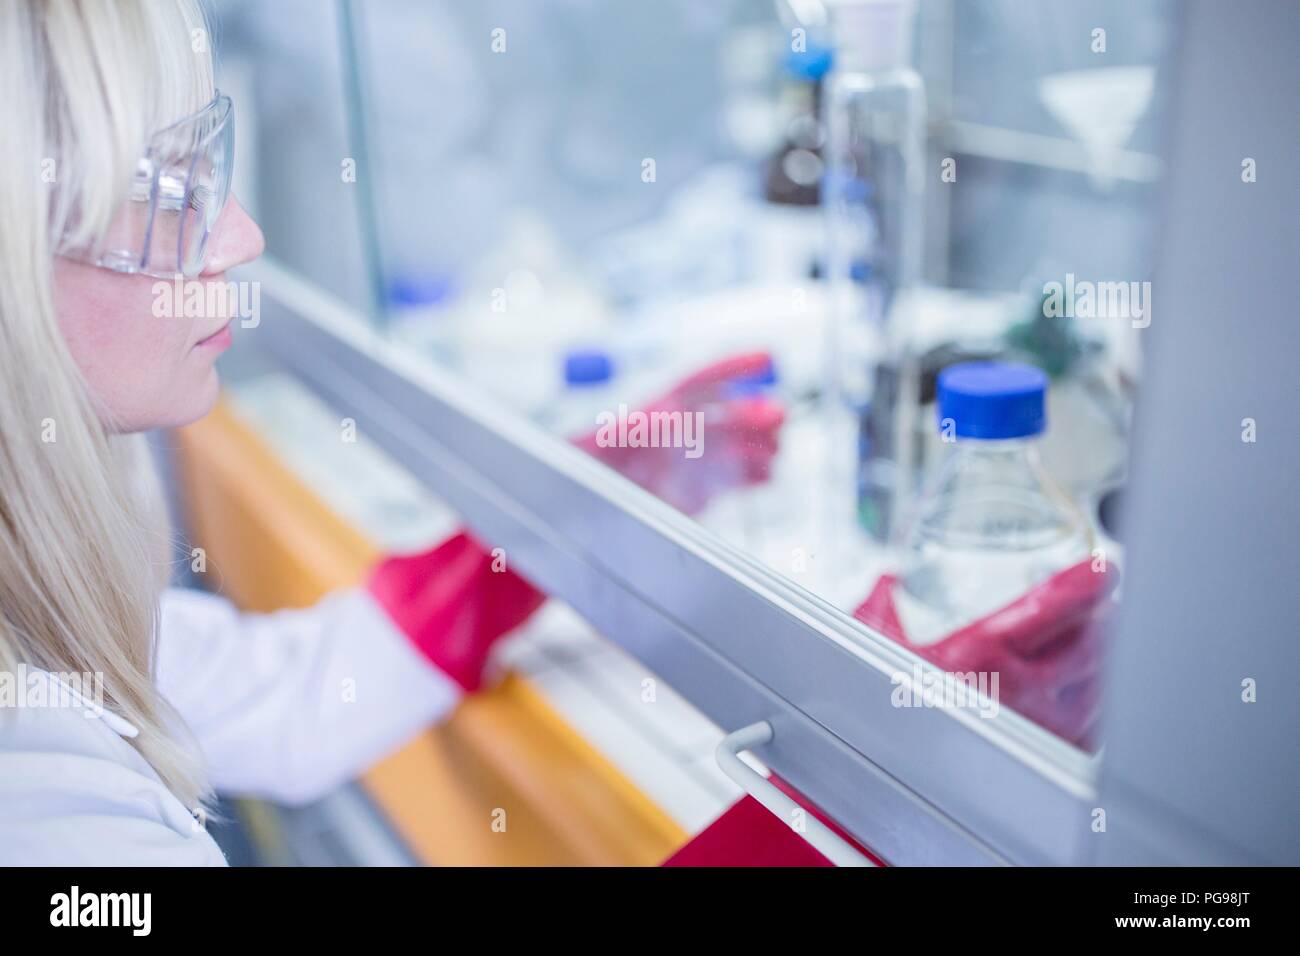 Labortechniker mit einem Laminardurchflußmesser mit Haube, dicke Handschuhe und Schutzbrille bei der Arbeit mit gefährlichen Chemikalien. Stockfoto